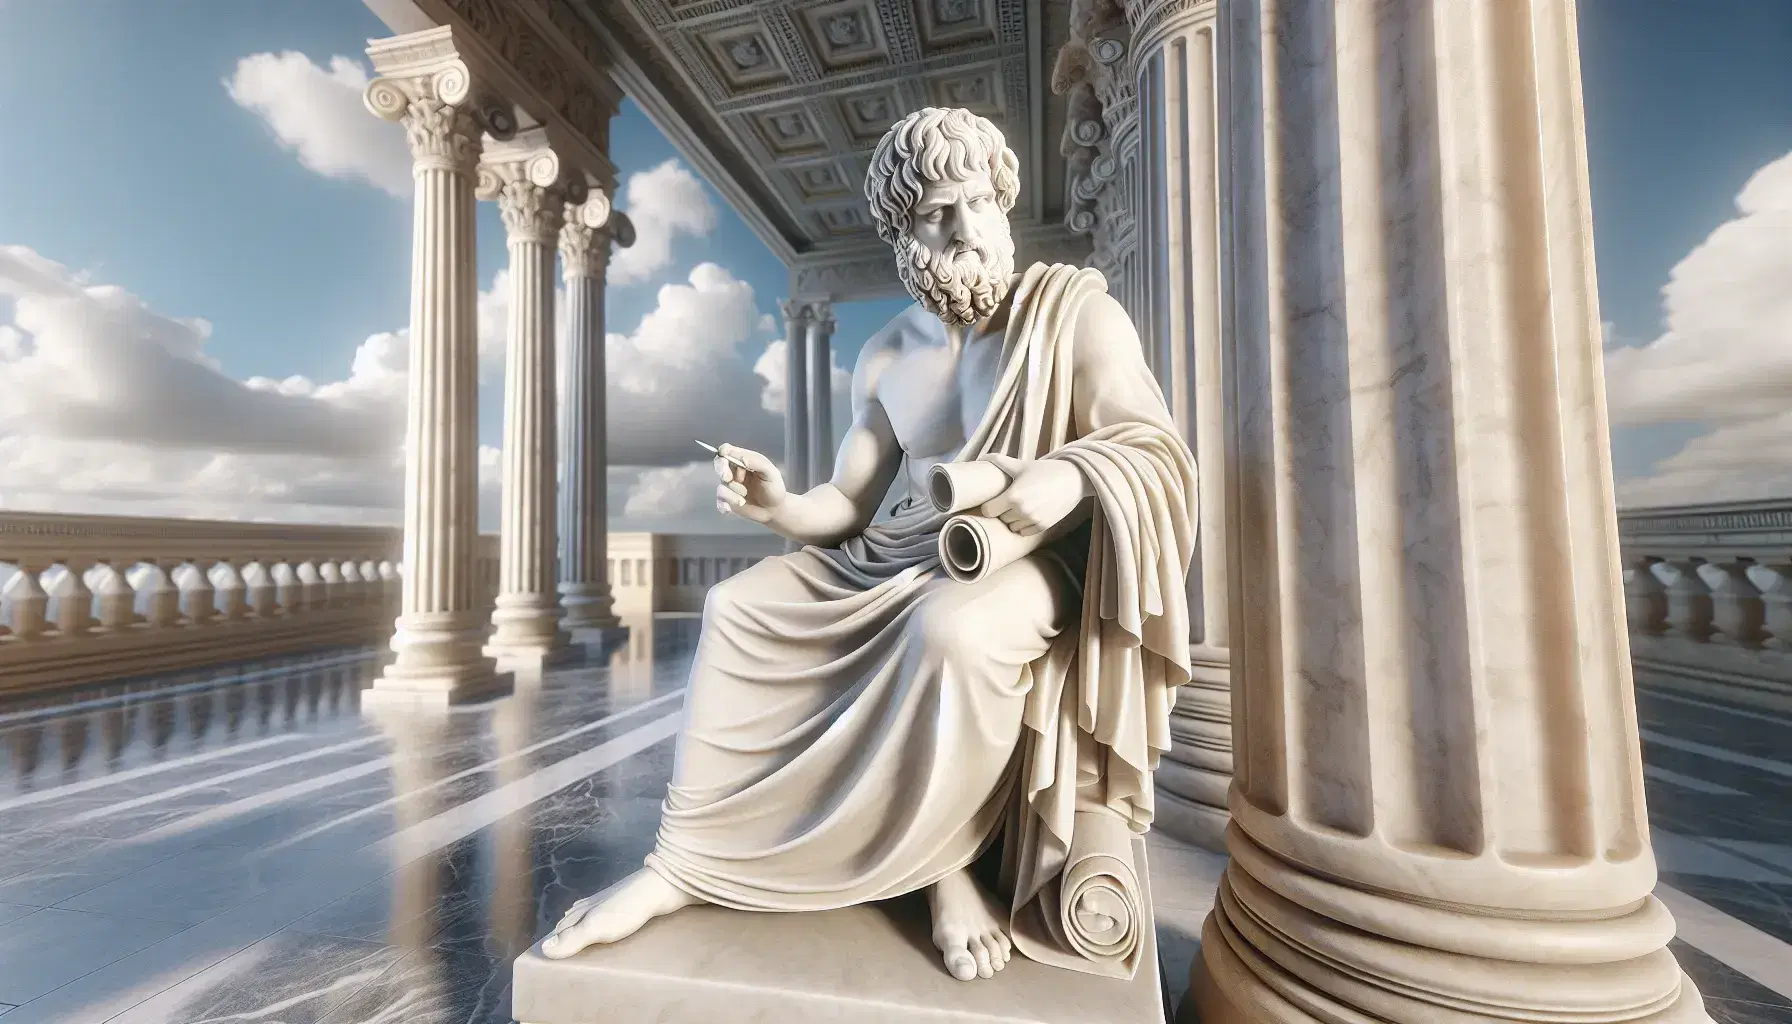 Estatua de mármol blanco de Aristóteles pensativo con túnica, mano extendida y rollo, ante columnas corintias y cielo azul.